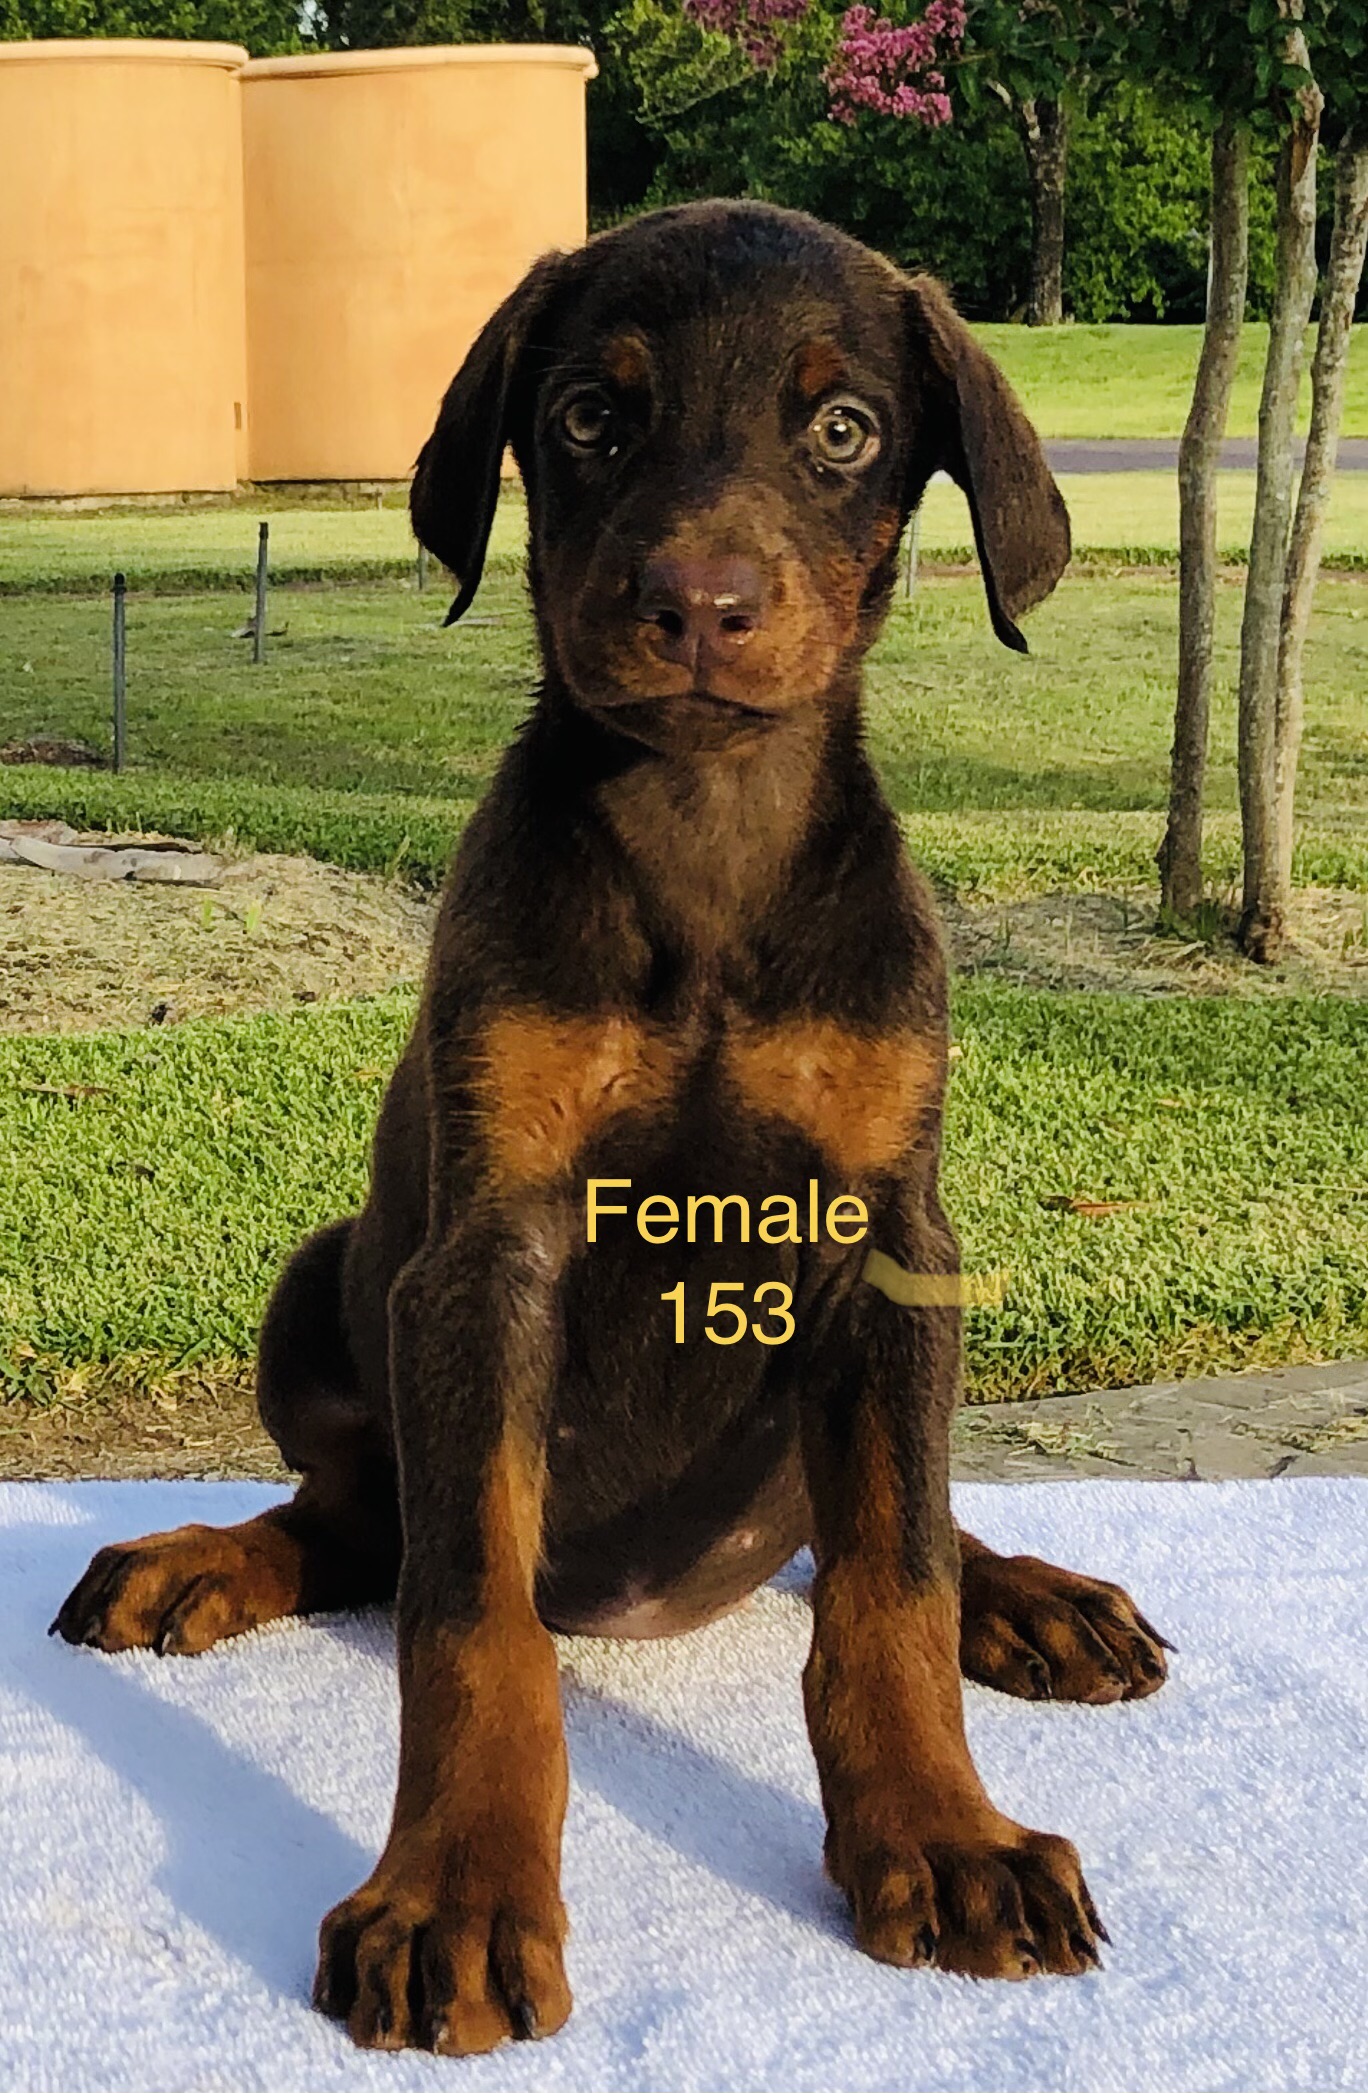 Female 153 + Brown + Female